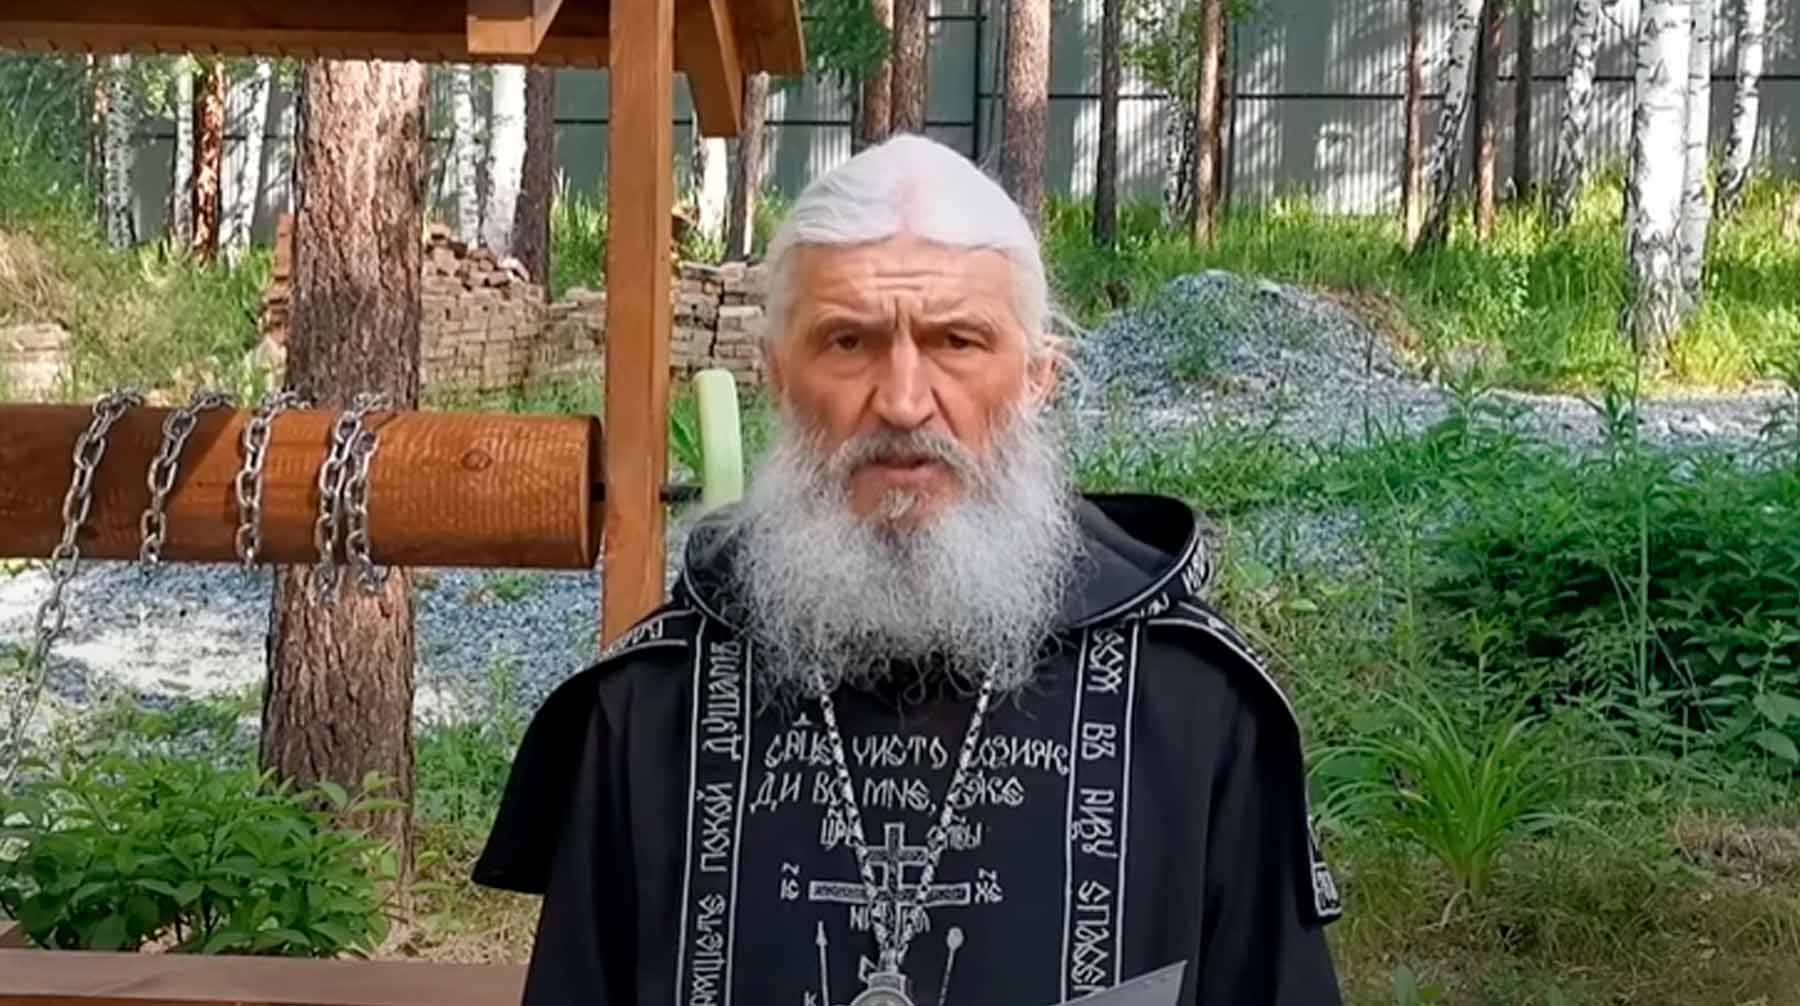 В епархии побаиваются опального монаха, считает Александр Дворкин Схиигумен Сергий